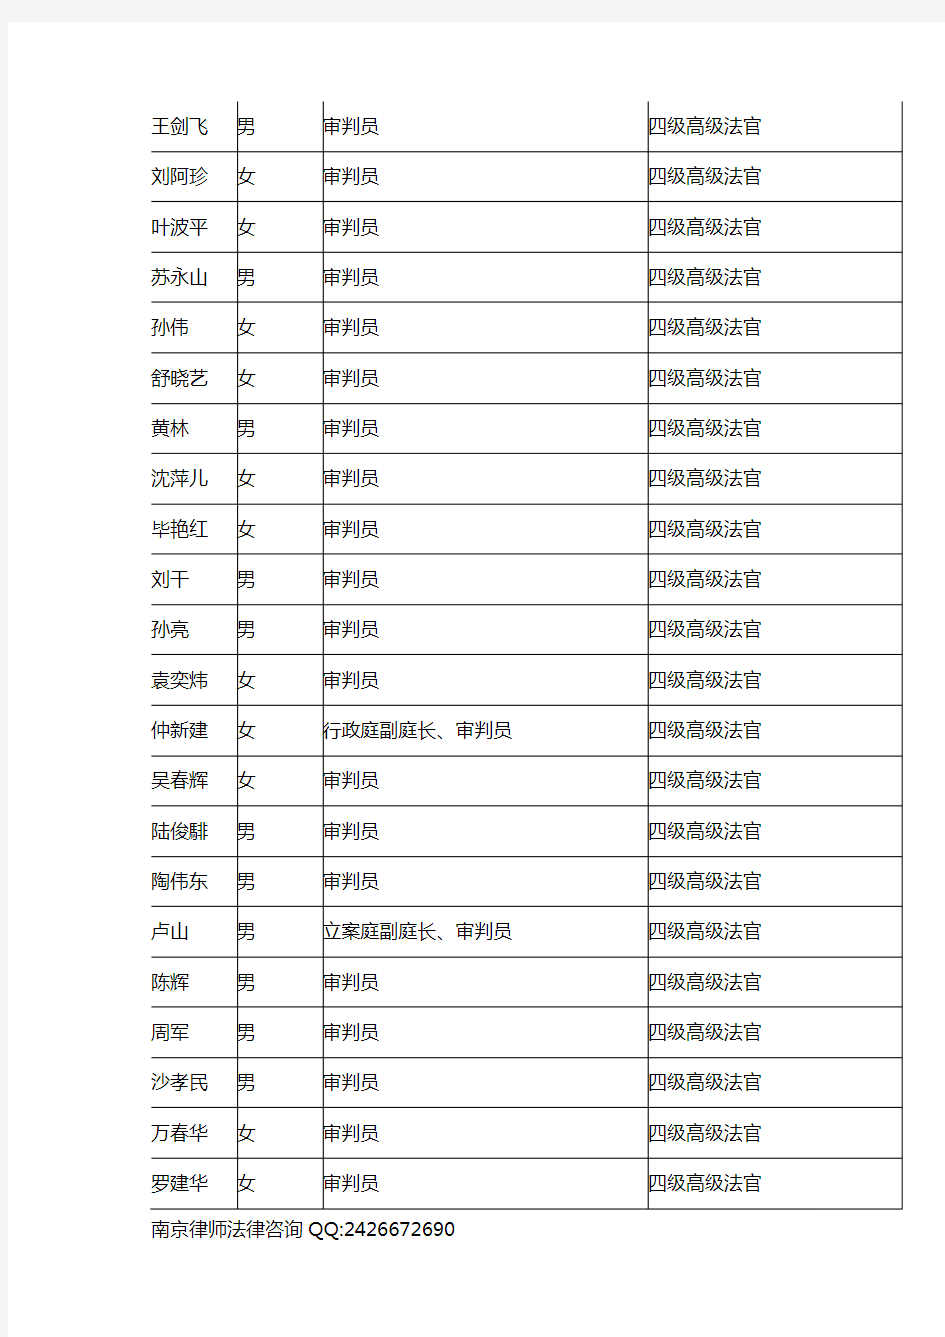 南京市中级人民法院法官一览表